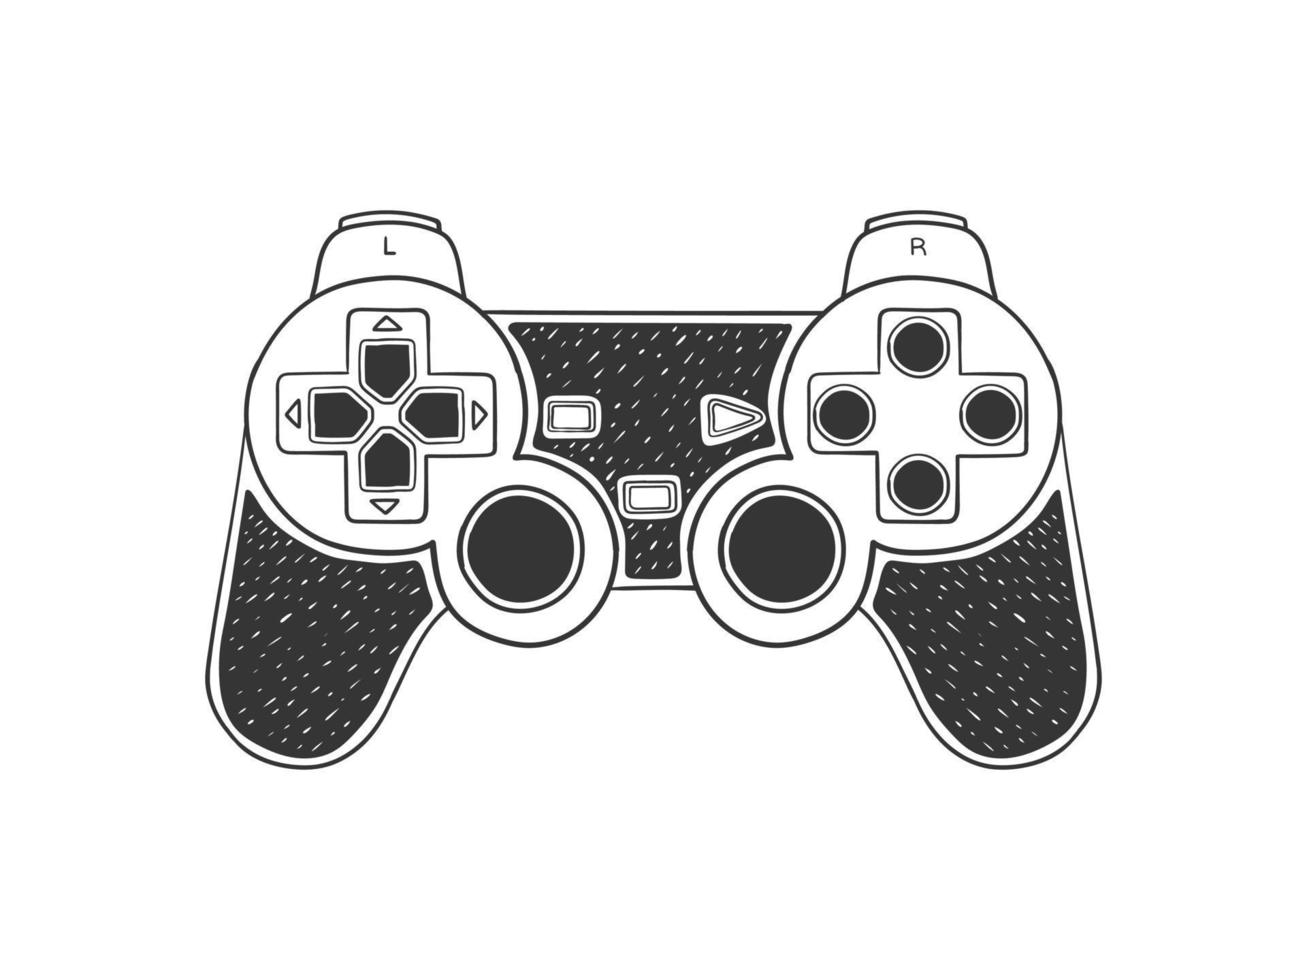 joypad joystick para consola de juegos. gamepad dibujado a mano. ilustración en estilo boceto. imagen vectorial vector